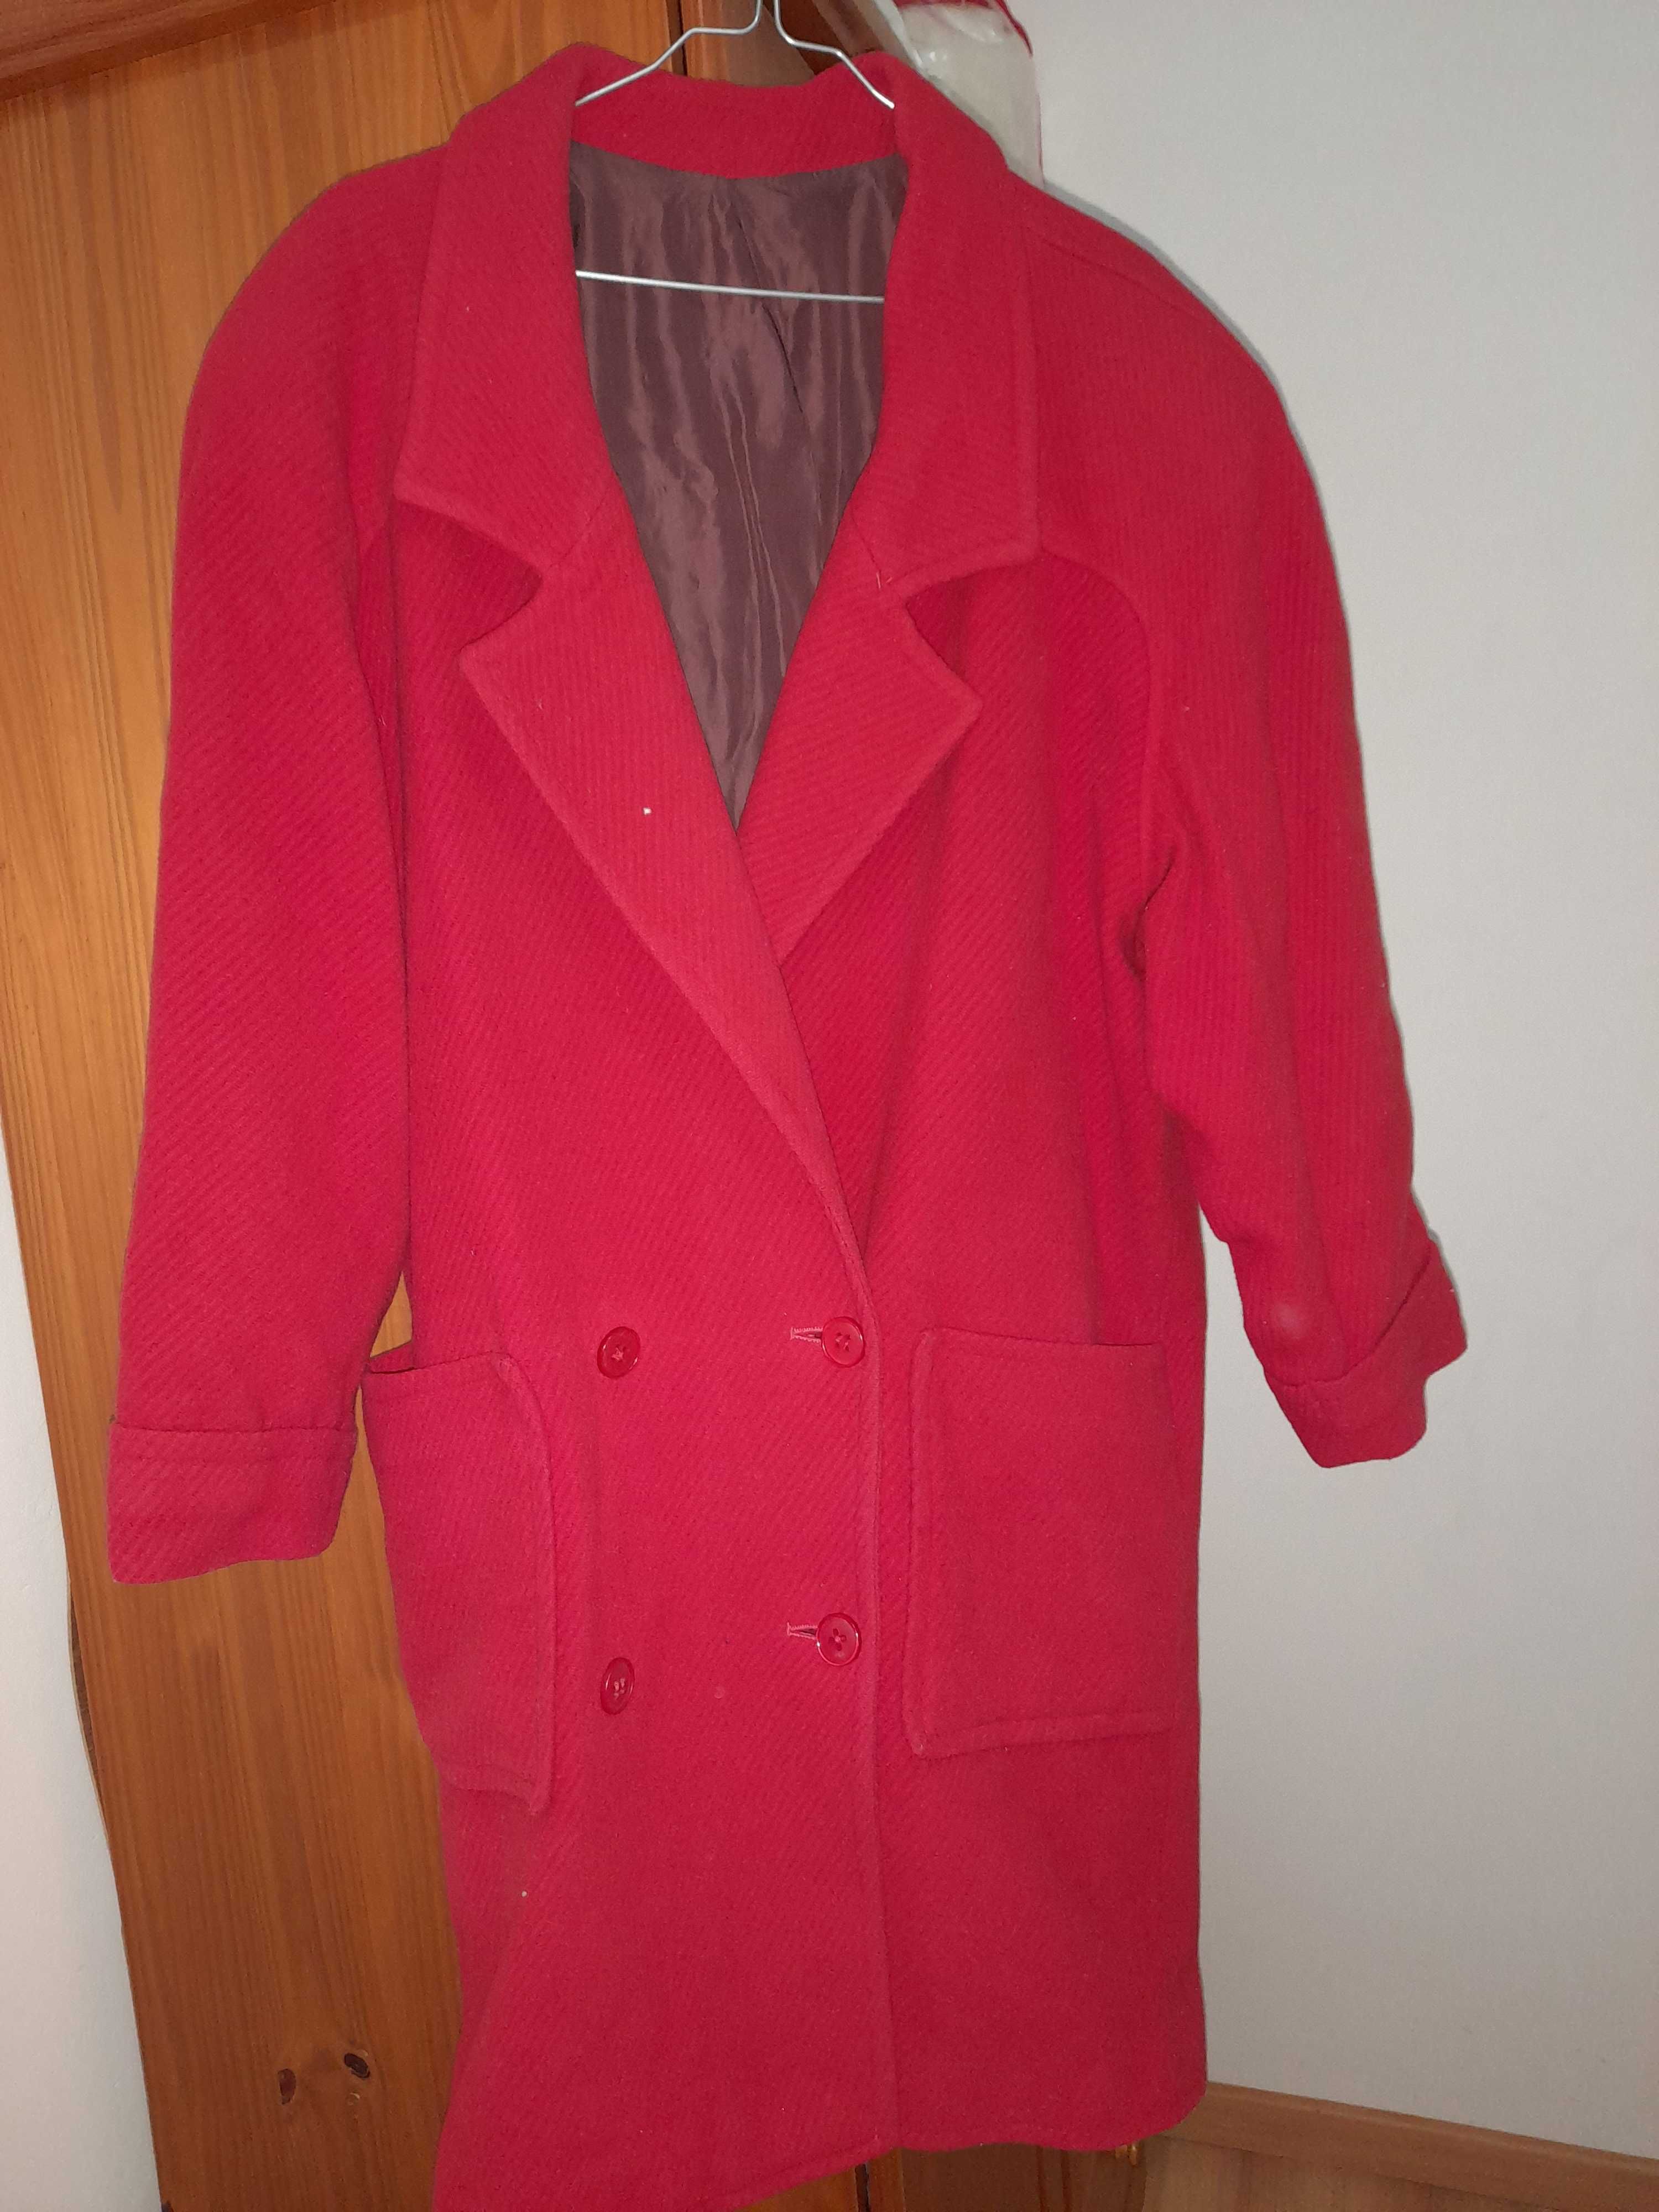 Casaco de inverno, vermelho, tamanho xxl, 10€.